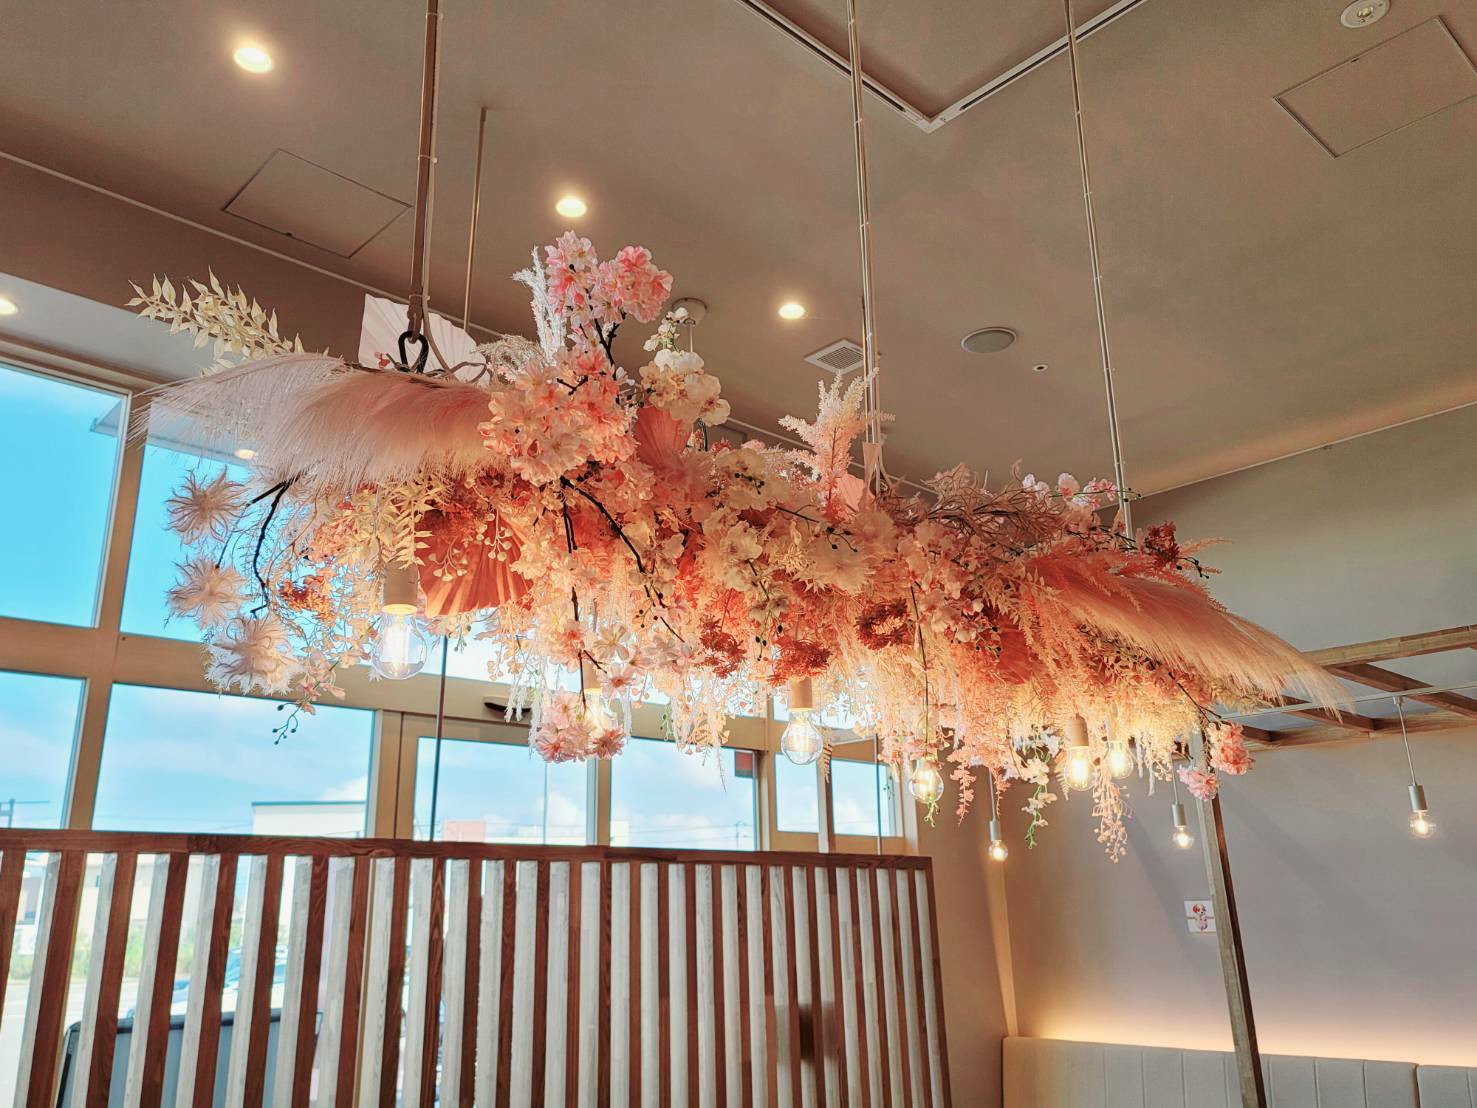 cafe Hanamori 阿南店の店内。花守りを意識したシンボルフラワーが装飾されています。